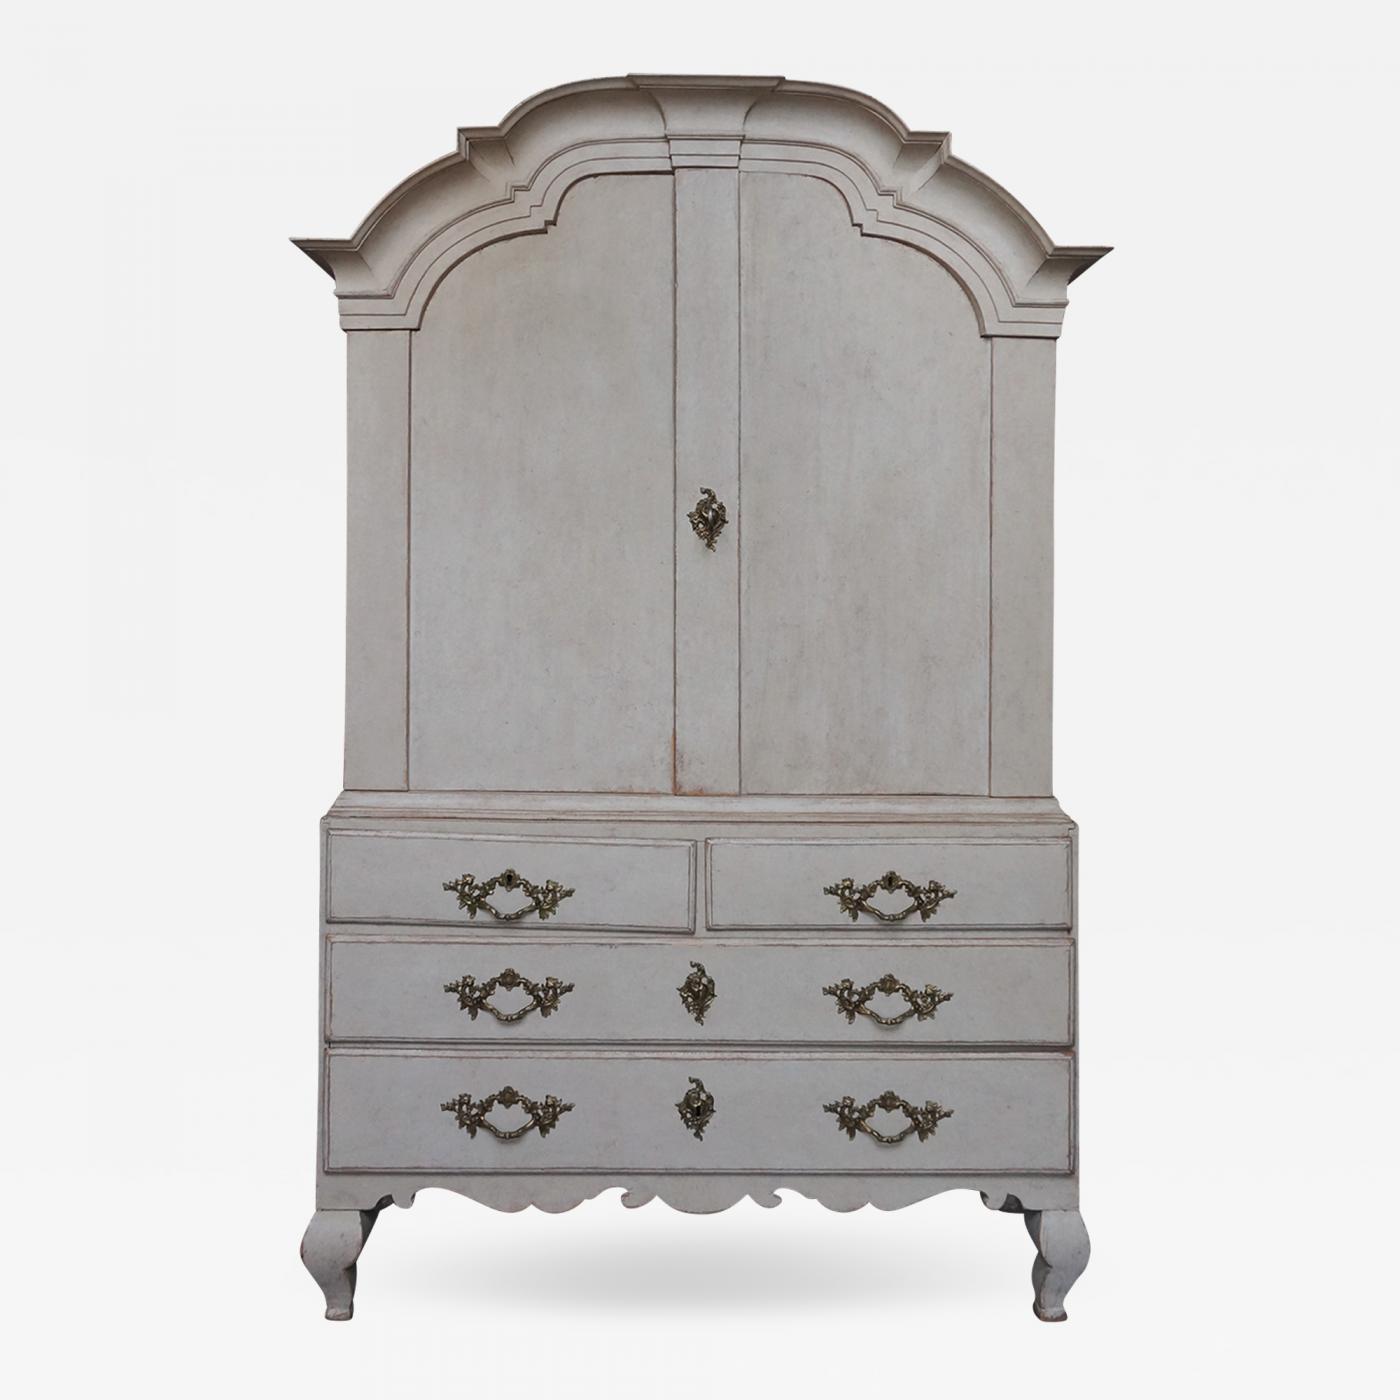 Period Rococo Cabinet With Original Hardware